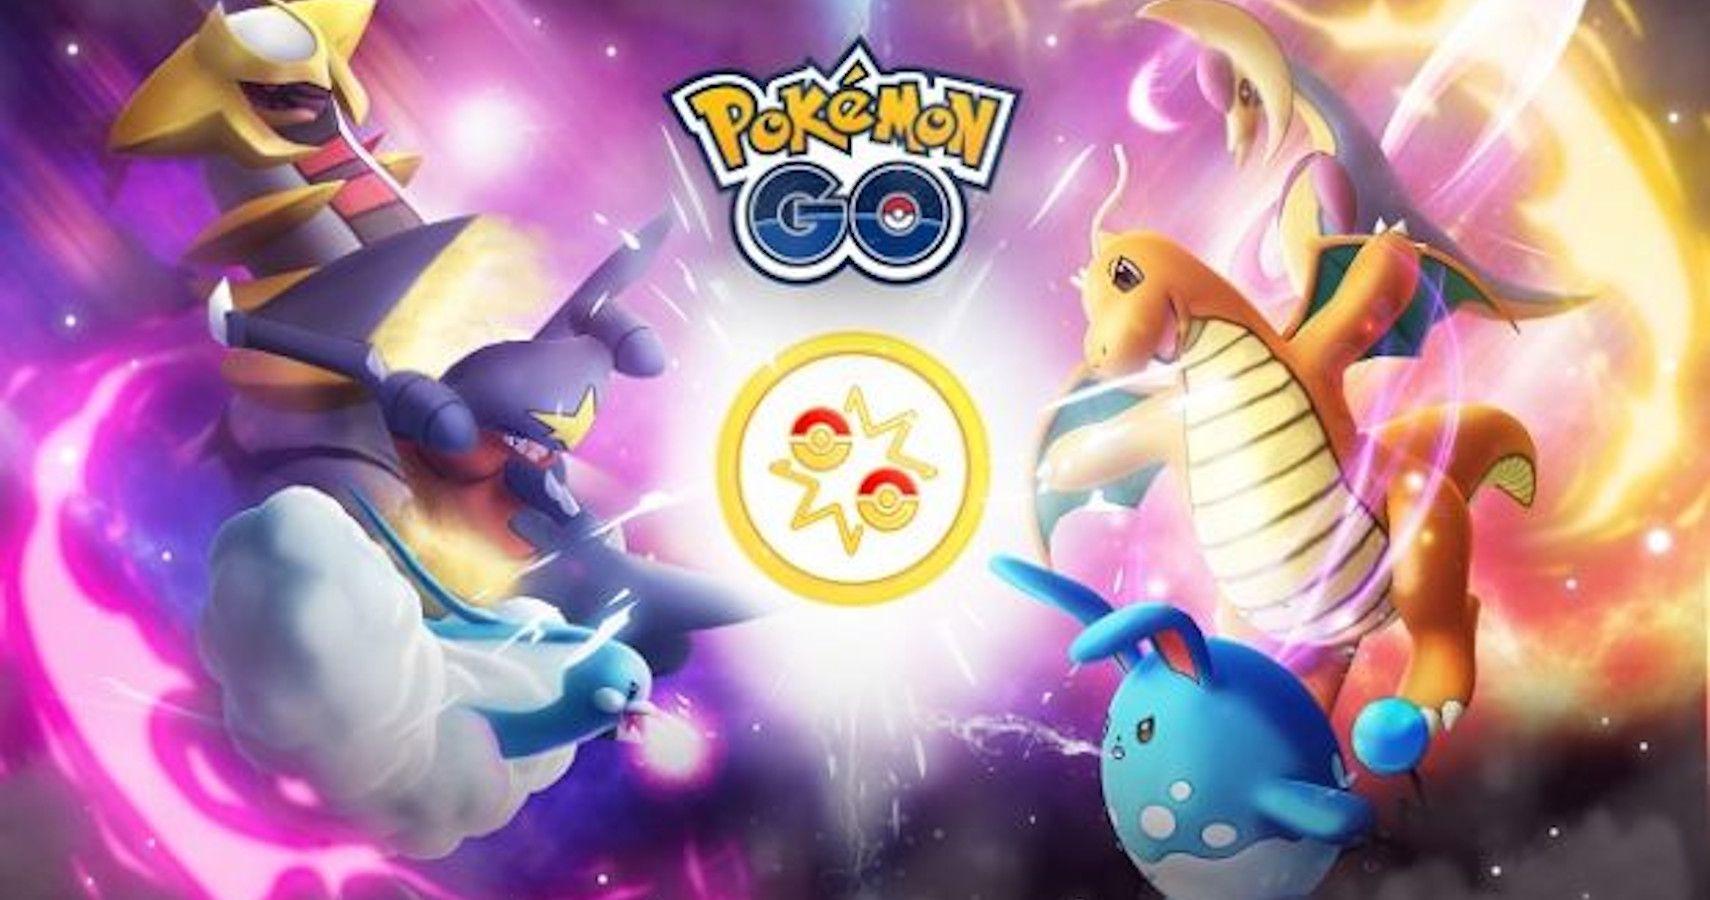 Pokémon GO Battle League Is Fun But Shouldn’t Be Mandatory